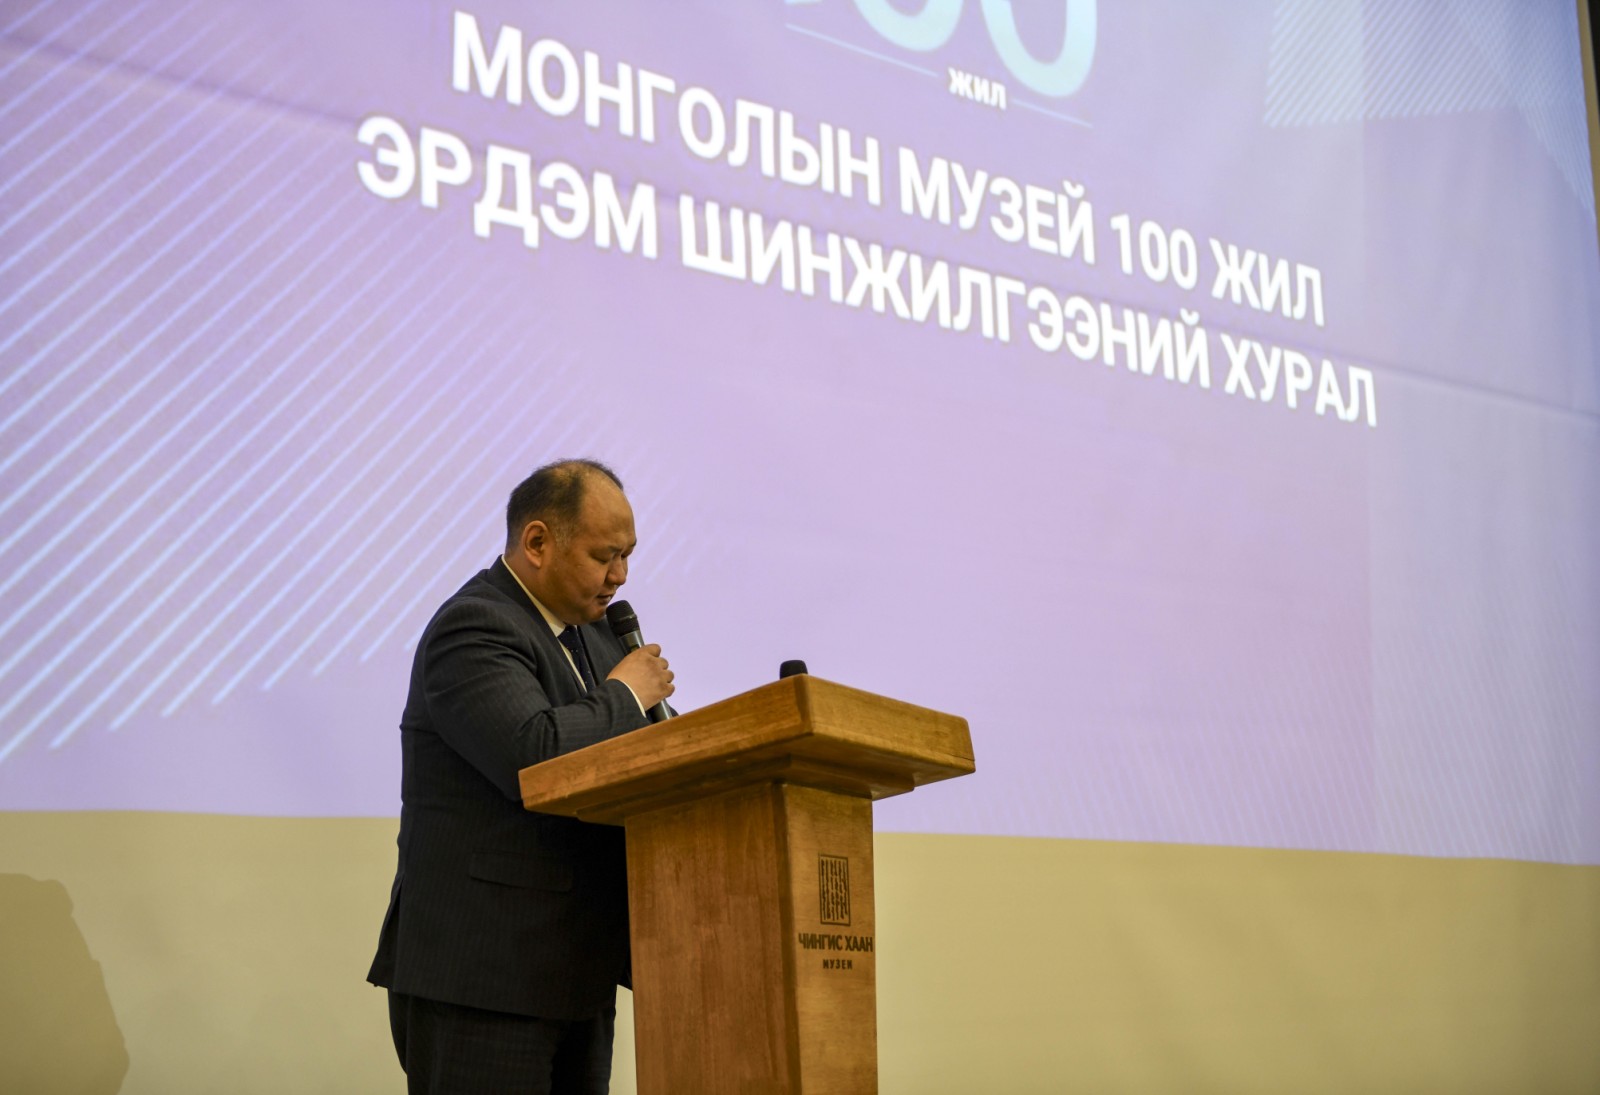 "Монголын музейн 100 жил эрдэм шинжилгээний хурал боллоо"